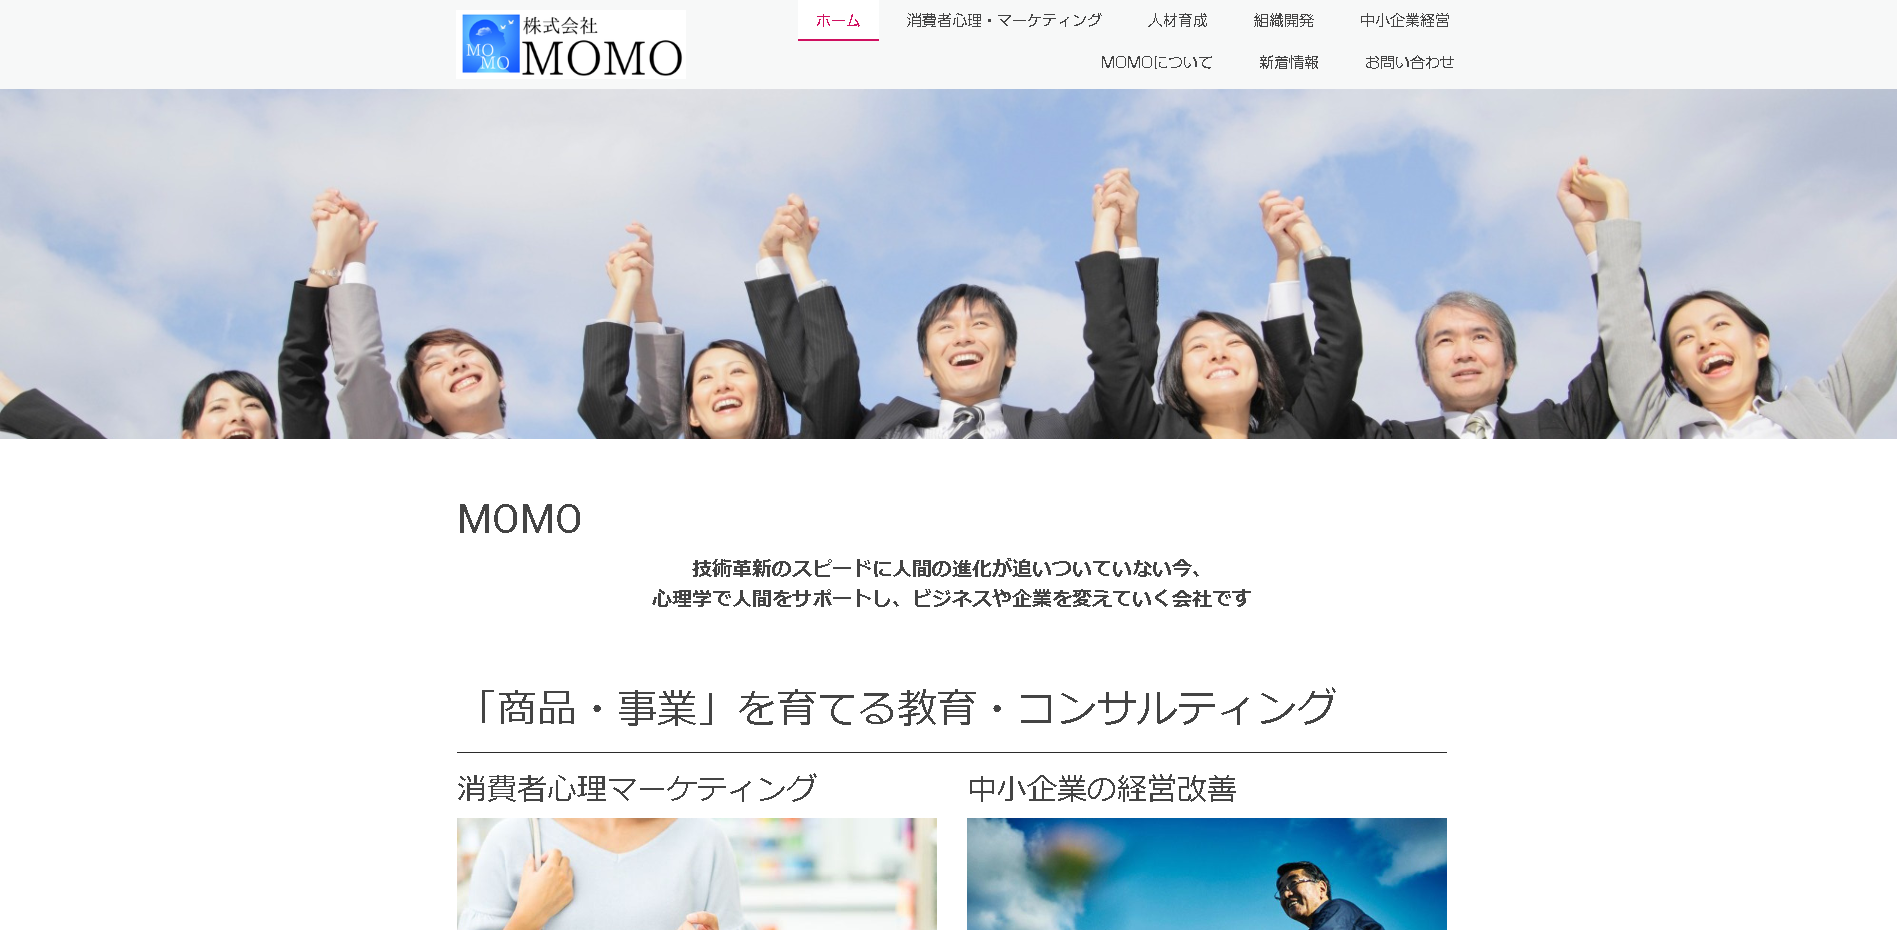 株式会社MOMOのMOMOサービス